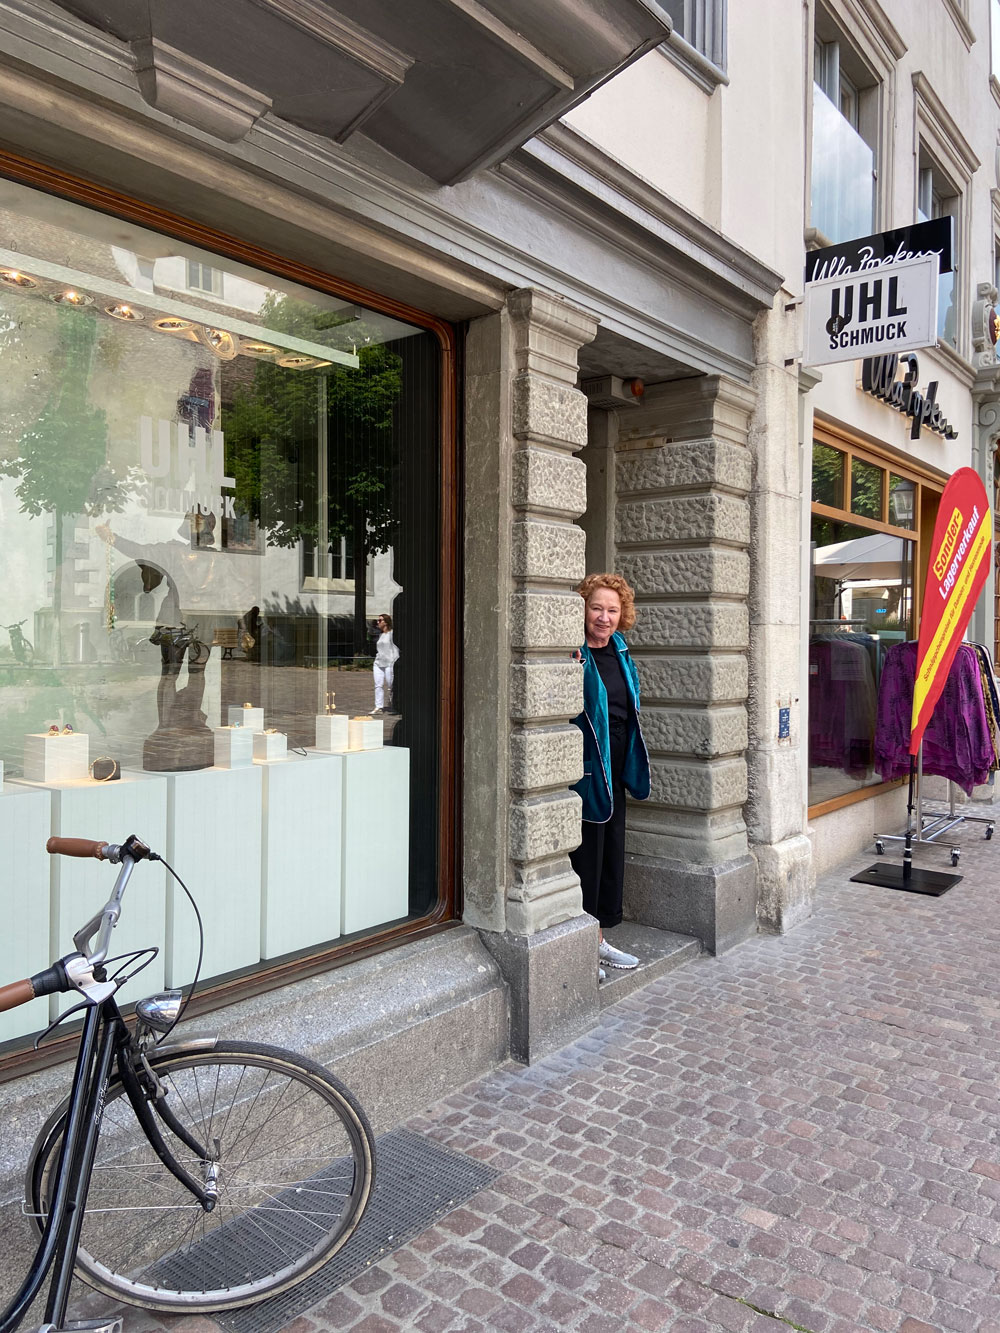 In der sonrisa-Serie "Tour de Suisse" verraten Dir Insider ihre Lieblingsorte in der Schweiz. Heute nimmt uns Kommunikationsexpertin Yoli auf einen Rundgang durch Schaffhausen.